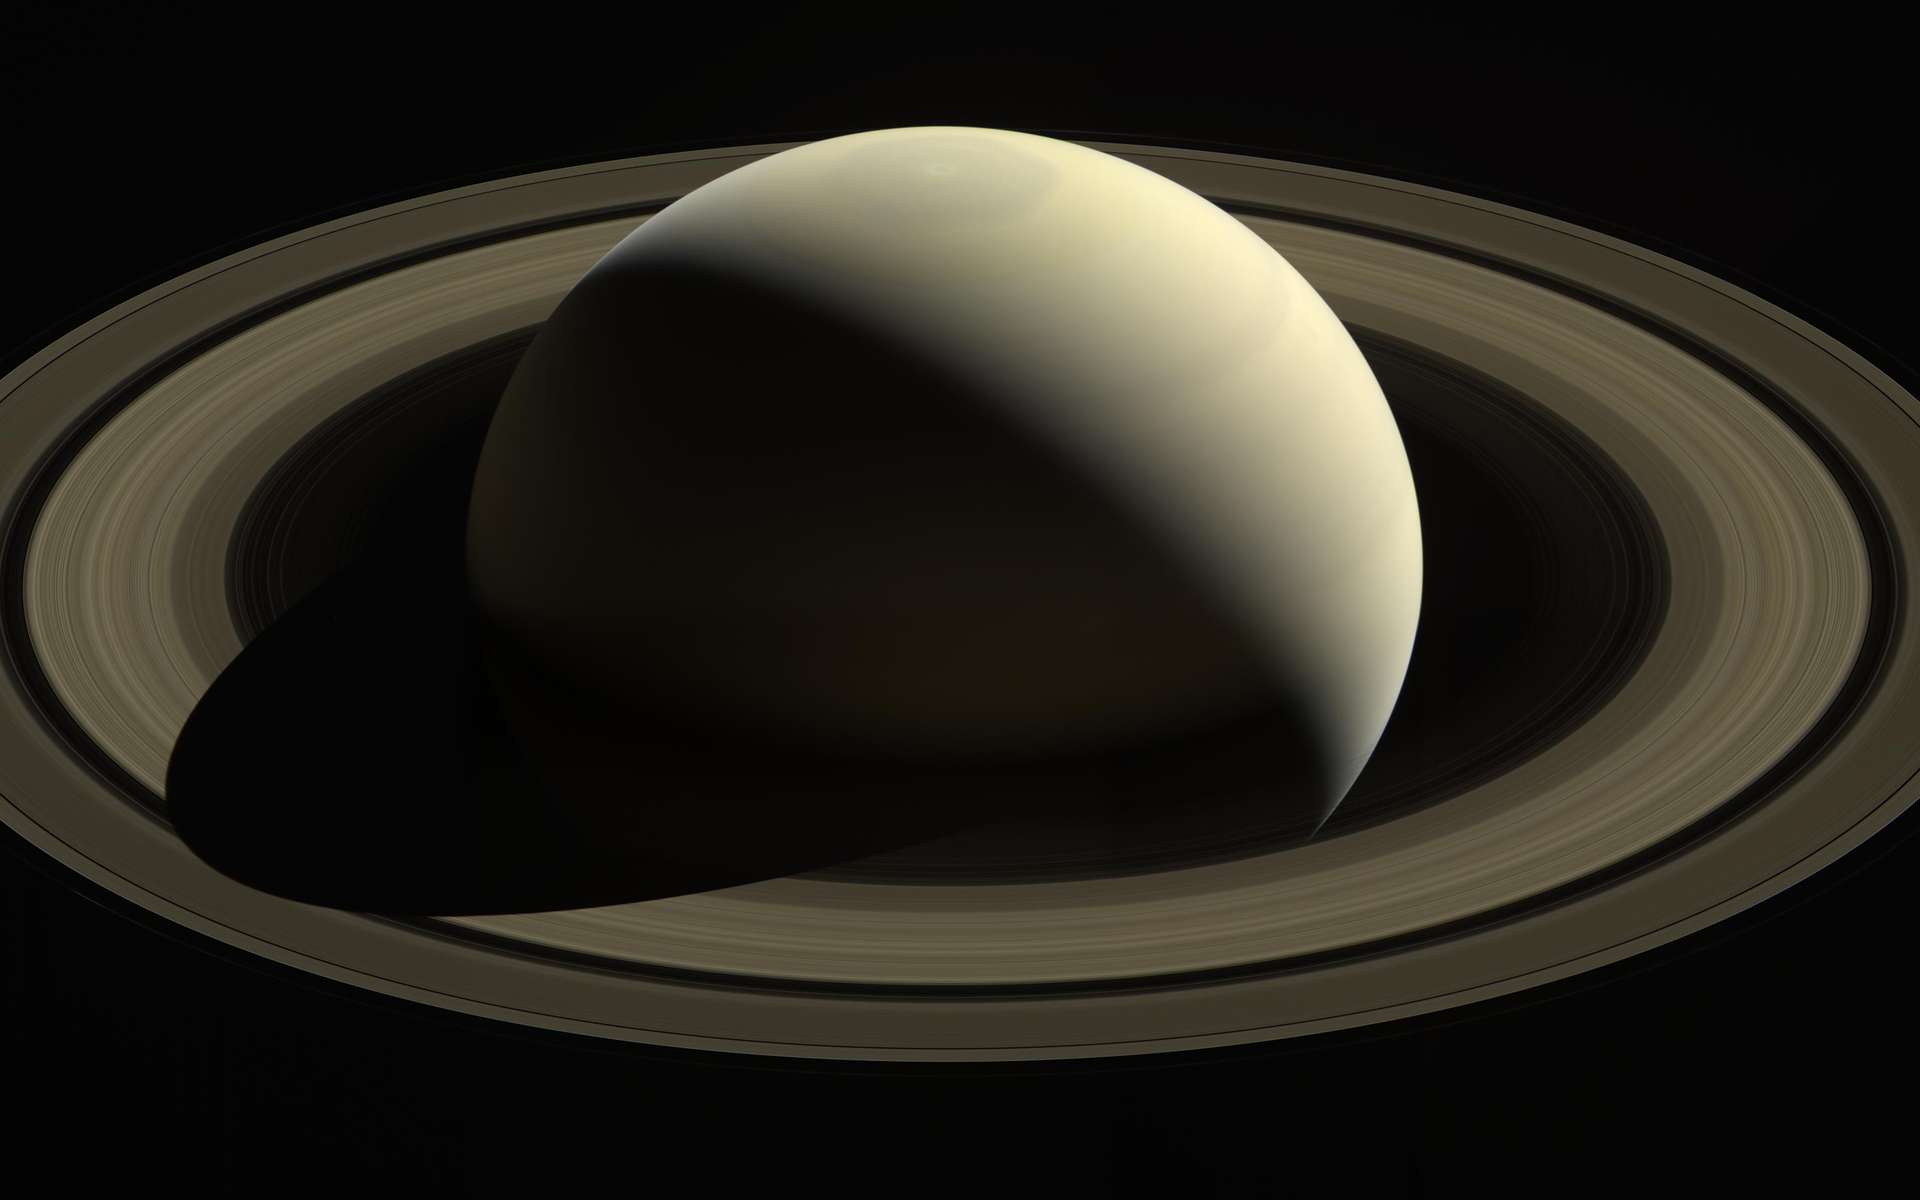 Vue d'ensemble de Saturne par la sonde Cassini. © Nasa, ESA, JPL-Caltech